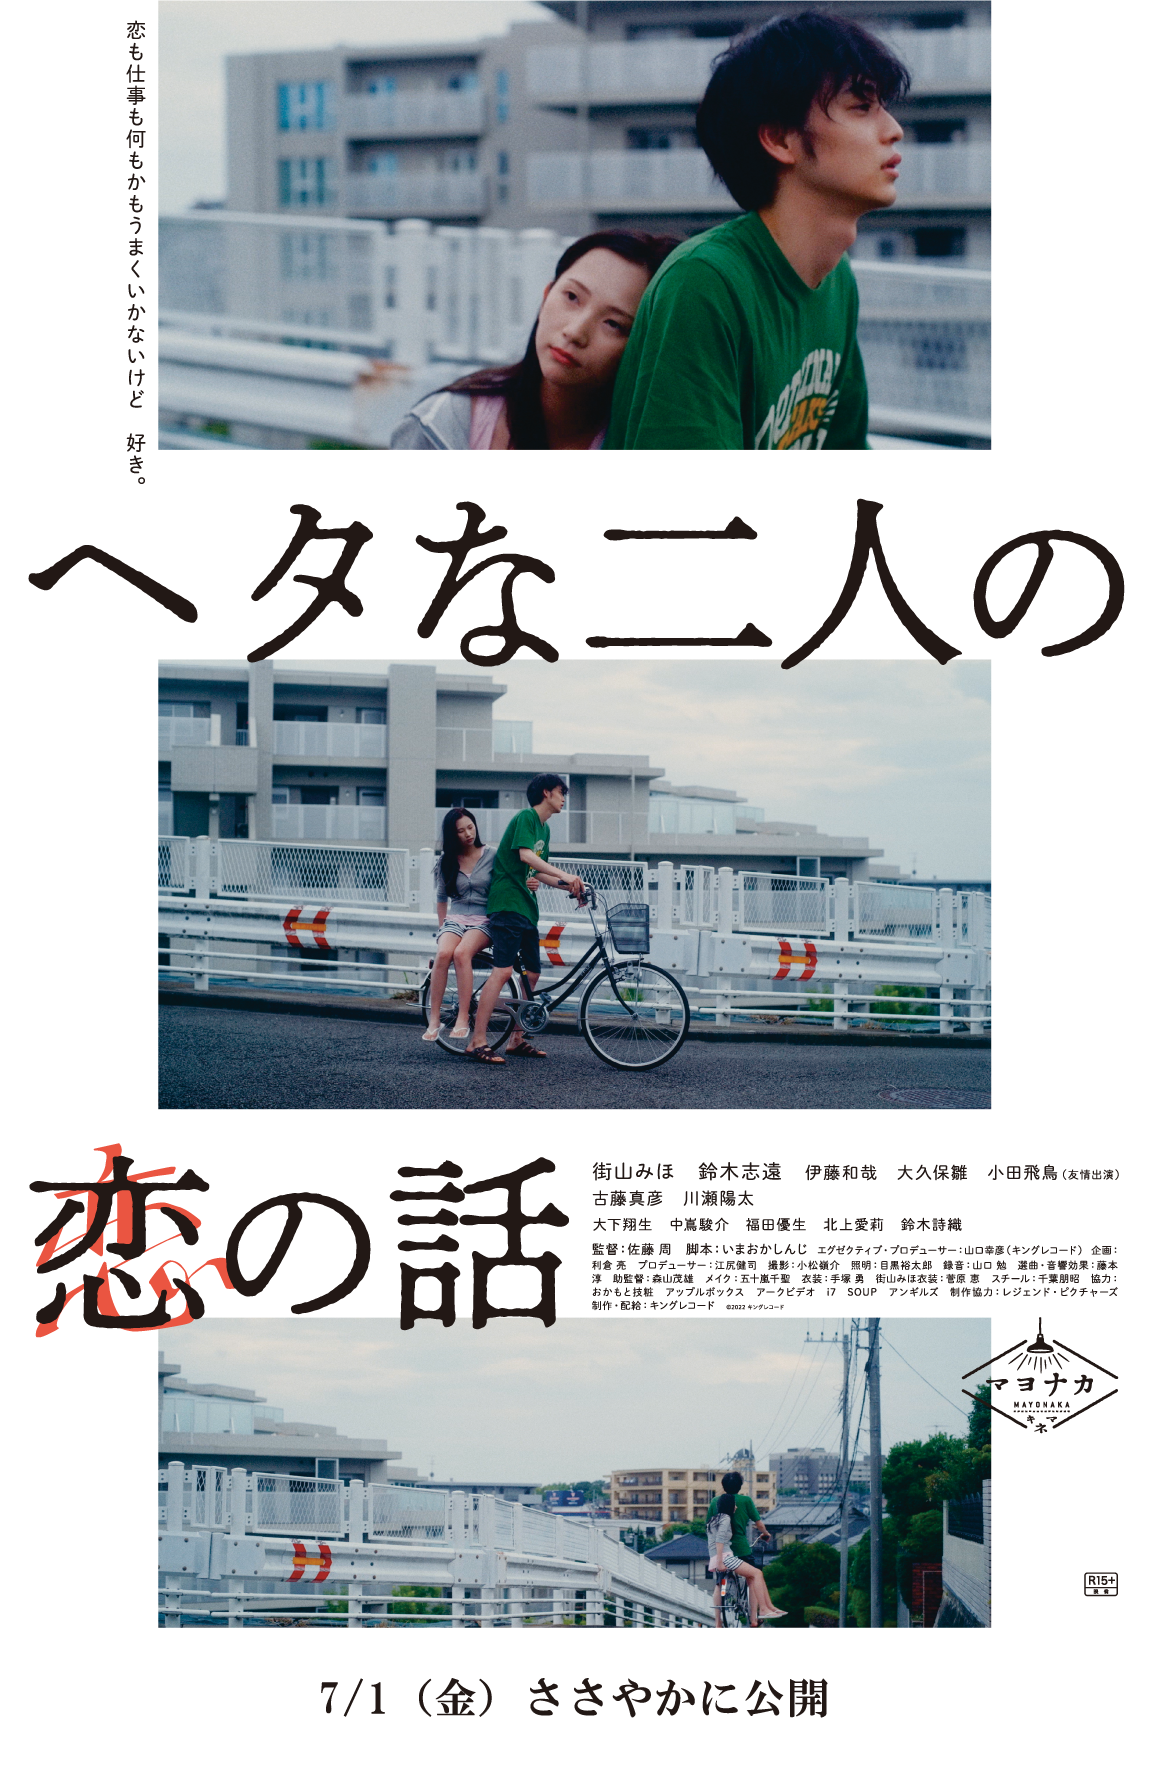 【日本映画】「ヘタな二人の恋の話〔2022〕」を観ての感想・レビュー